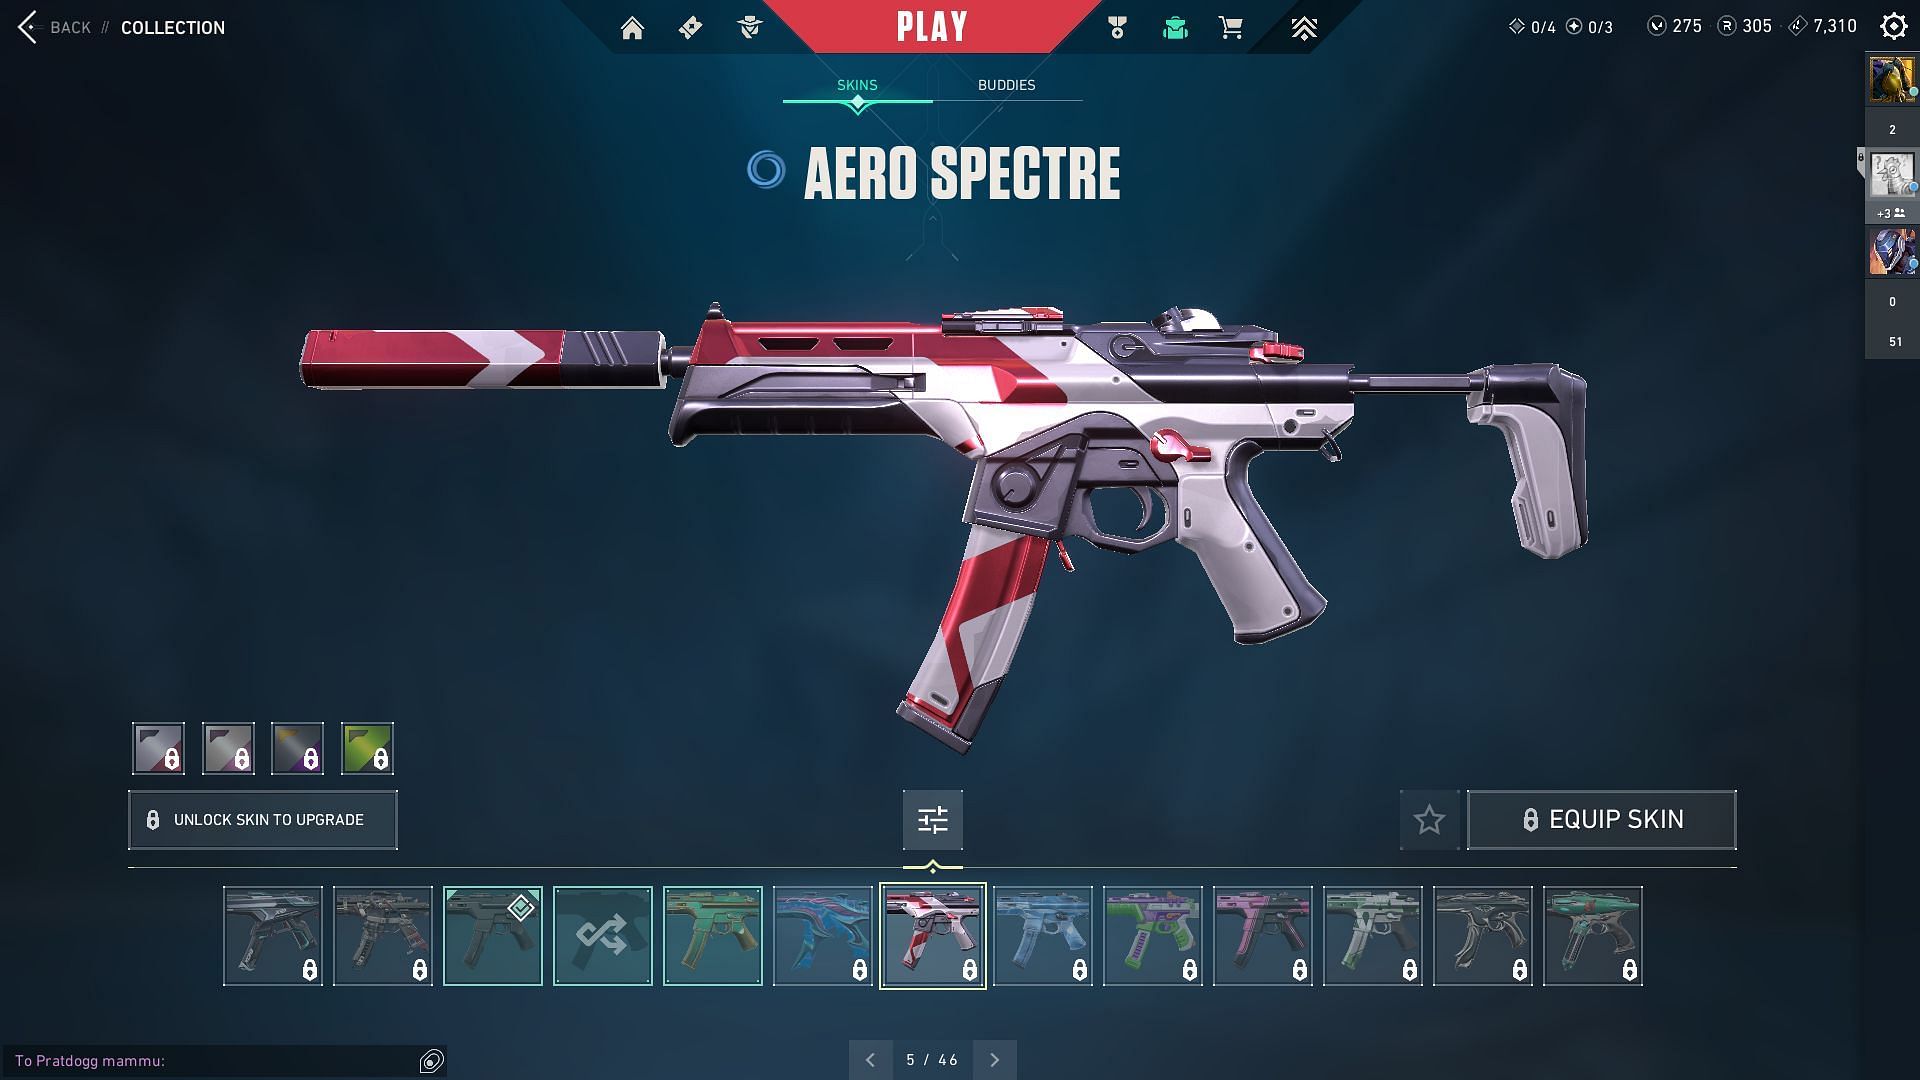 Aero Spectre (Image via Sportskeeda and Riot Games)